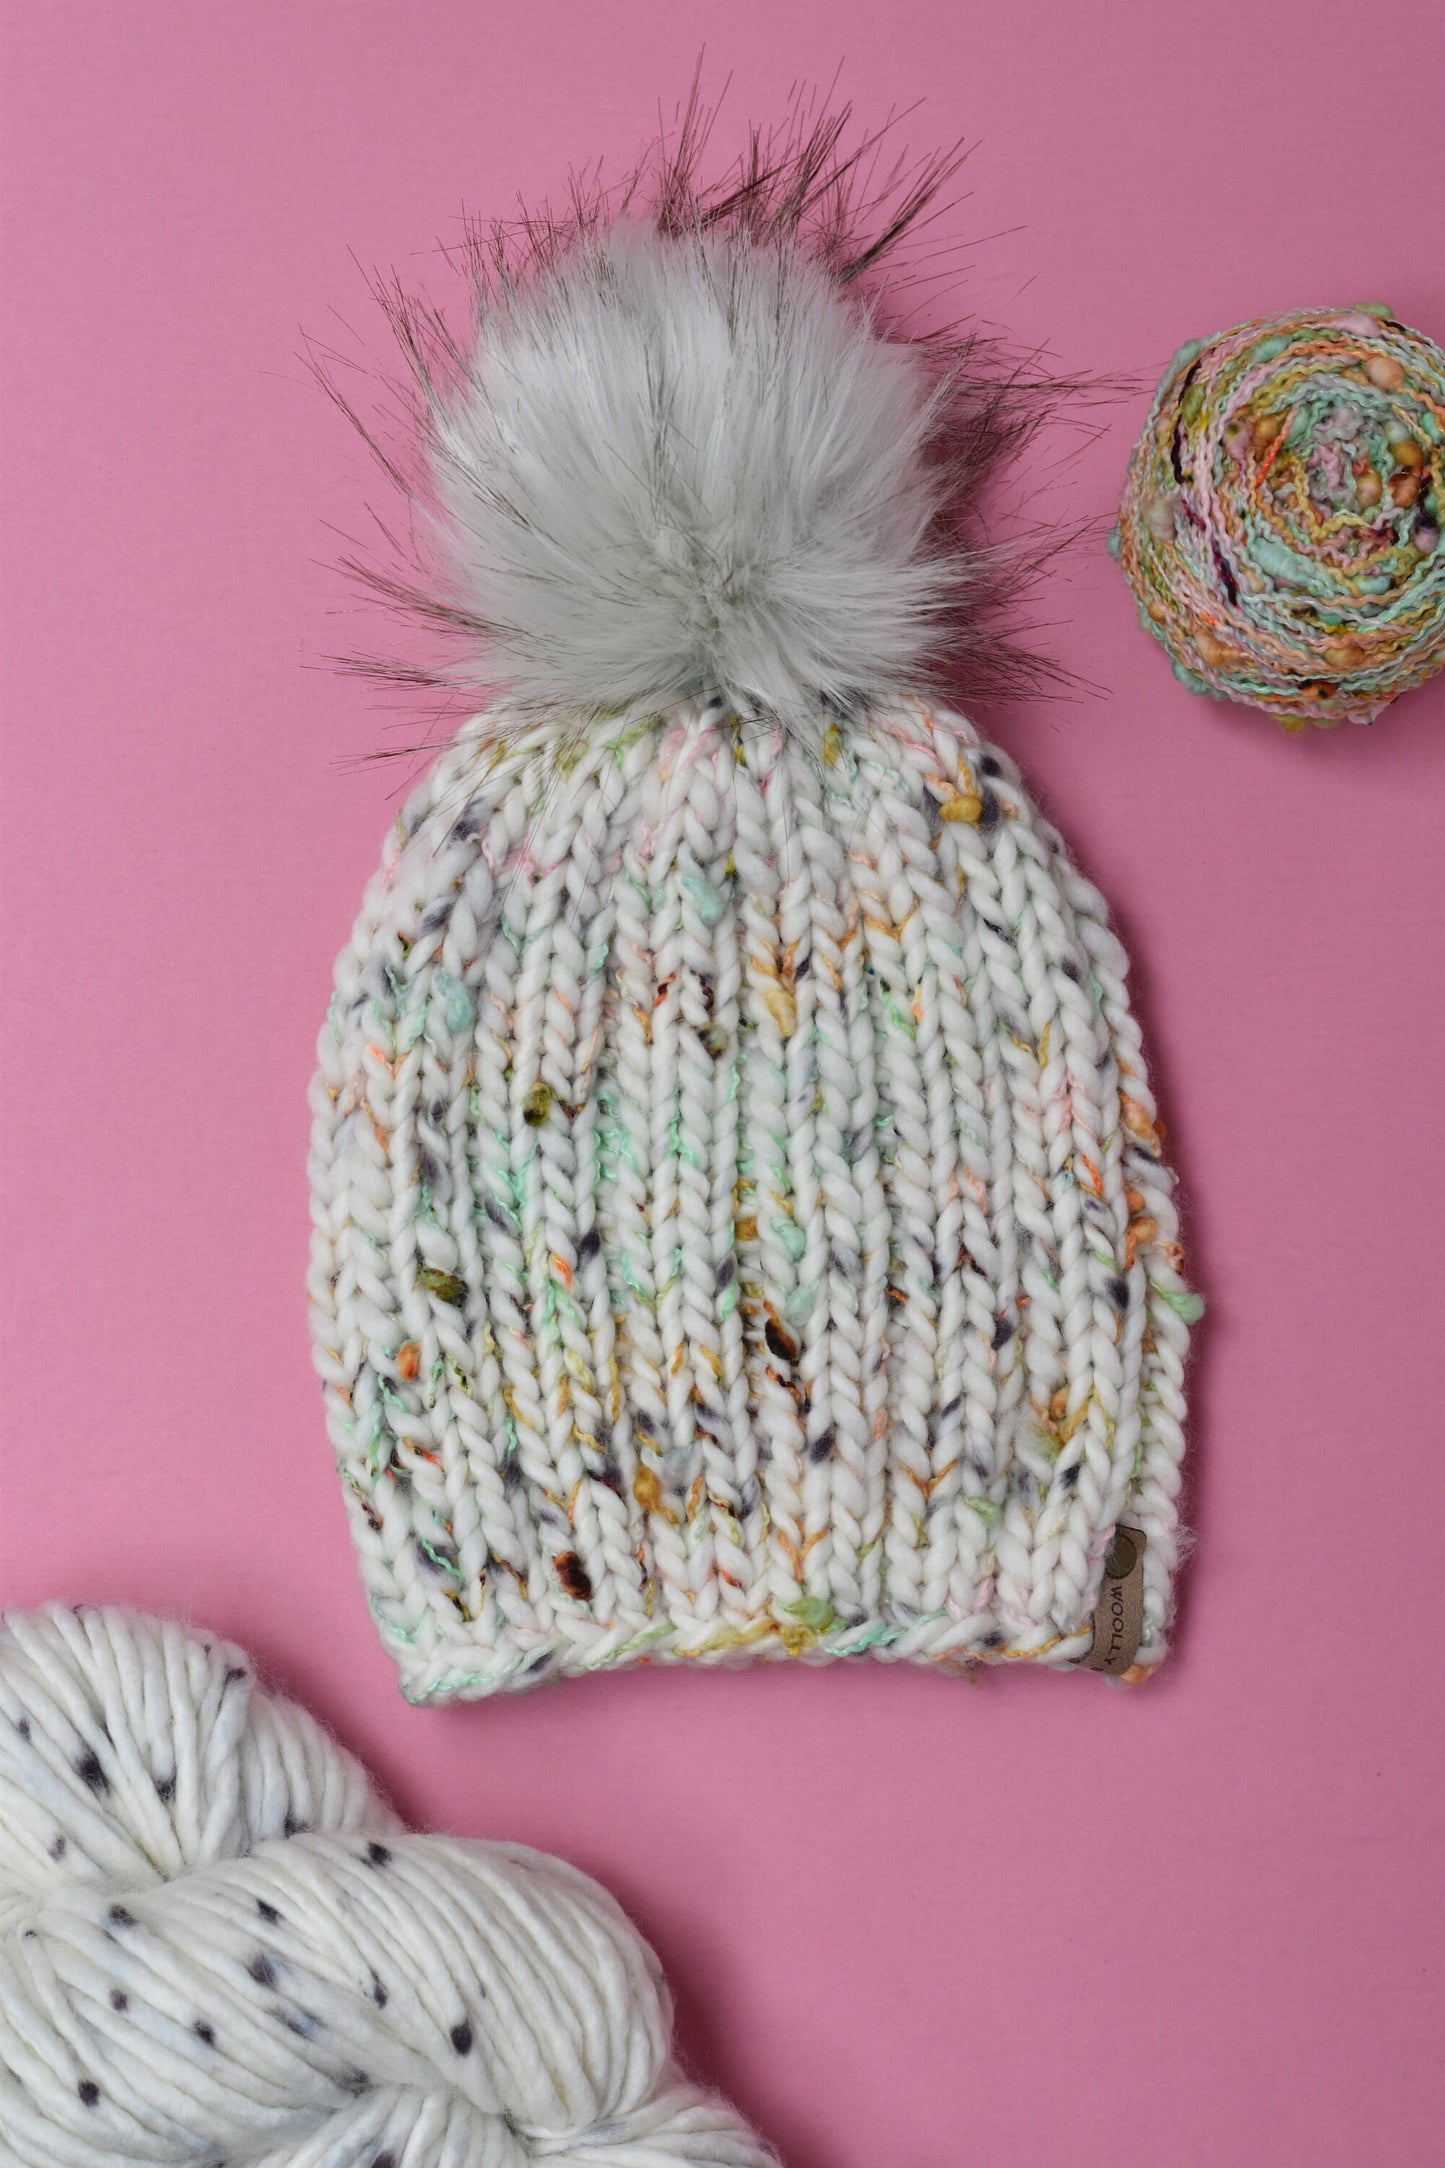 KNITTING PATTERN: Loppet Beanie | Easy Super Bulky Knit Hat Pattern | Slub Yarn Knitting Pattern